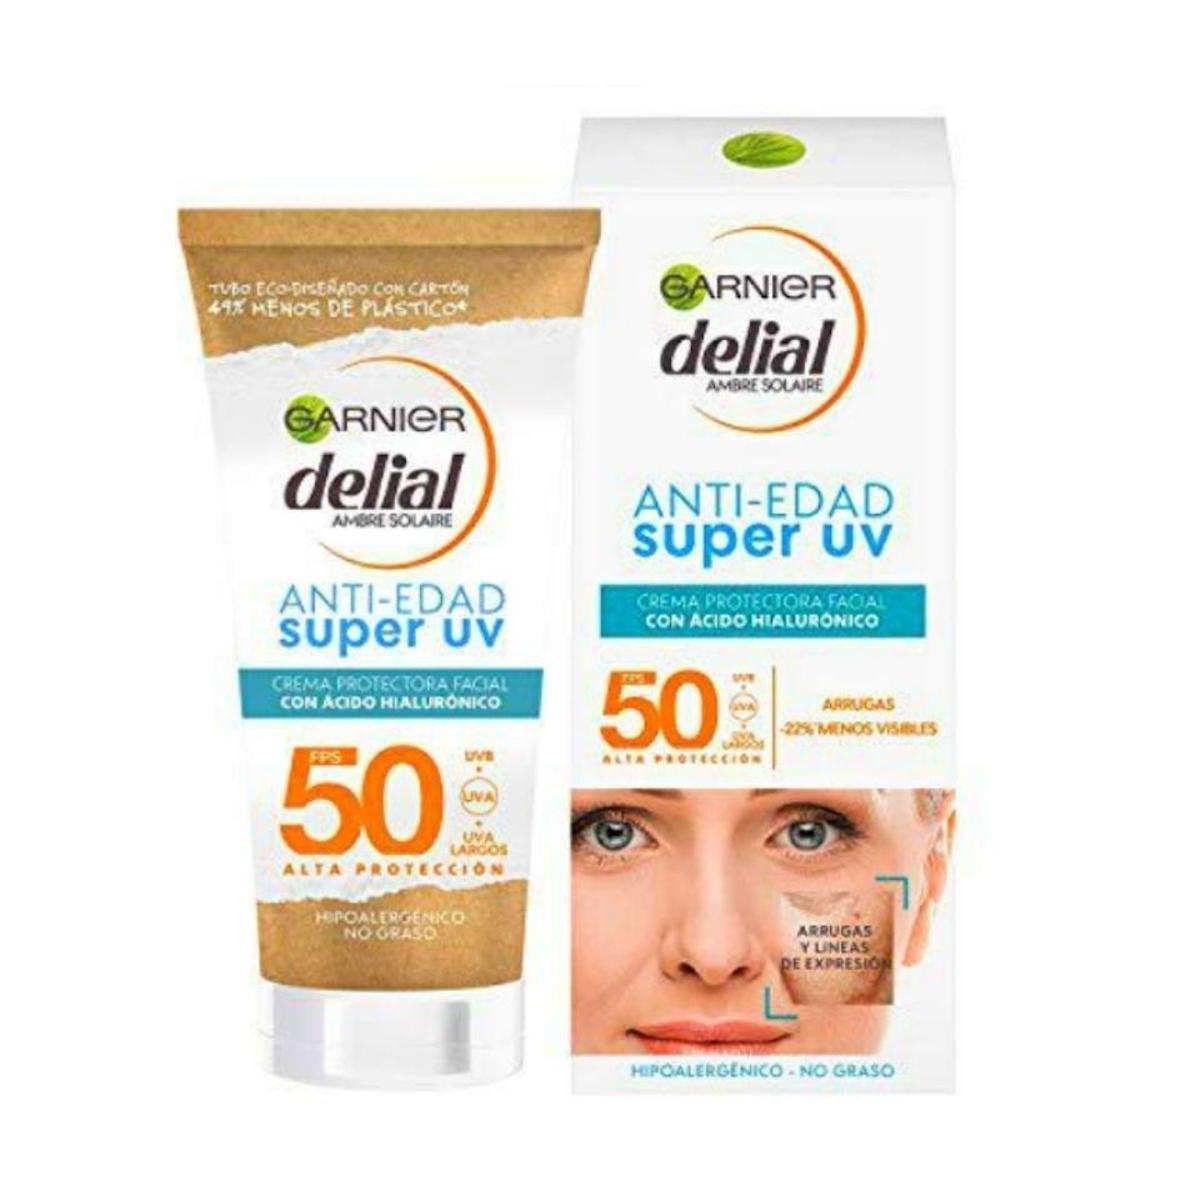 Crema protectora facial anti-manchas FP50+, de Garnier delial